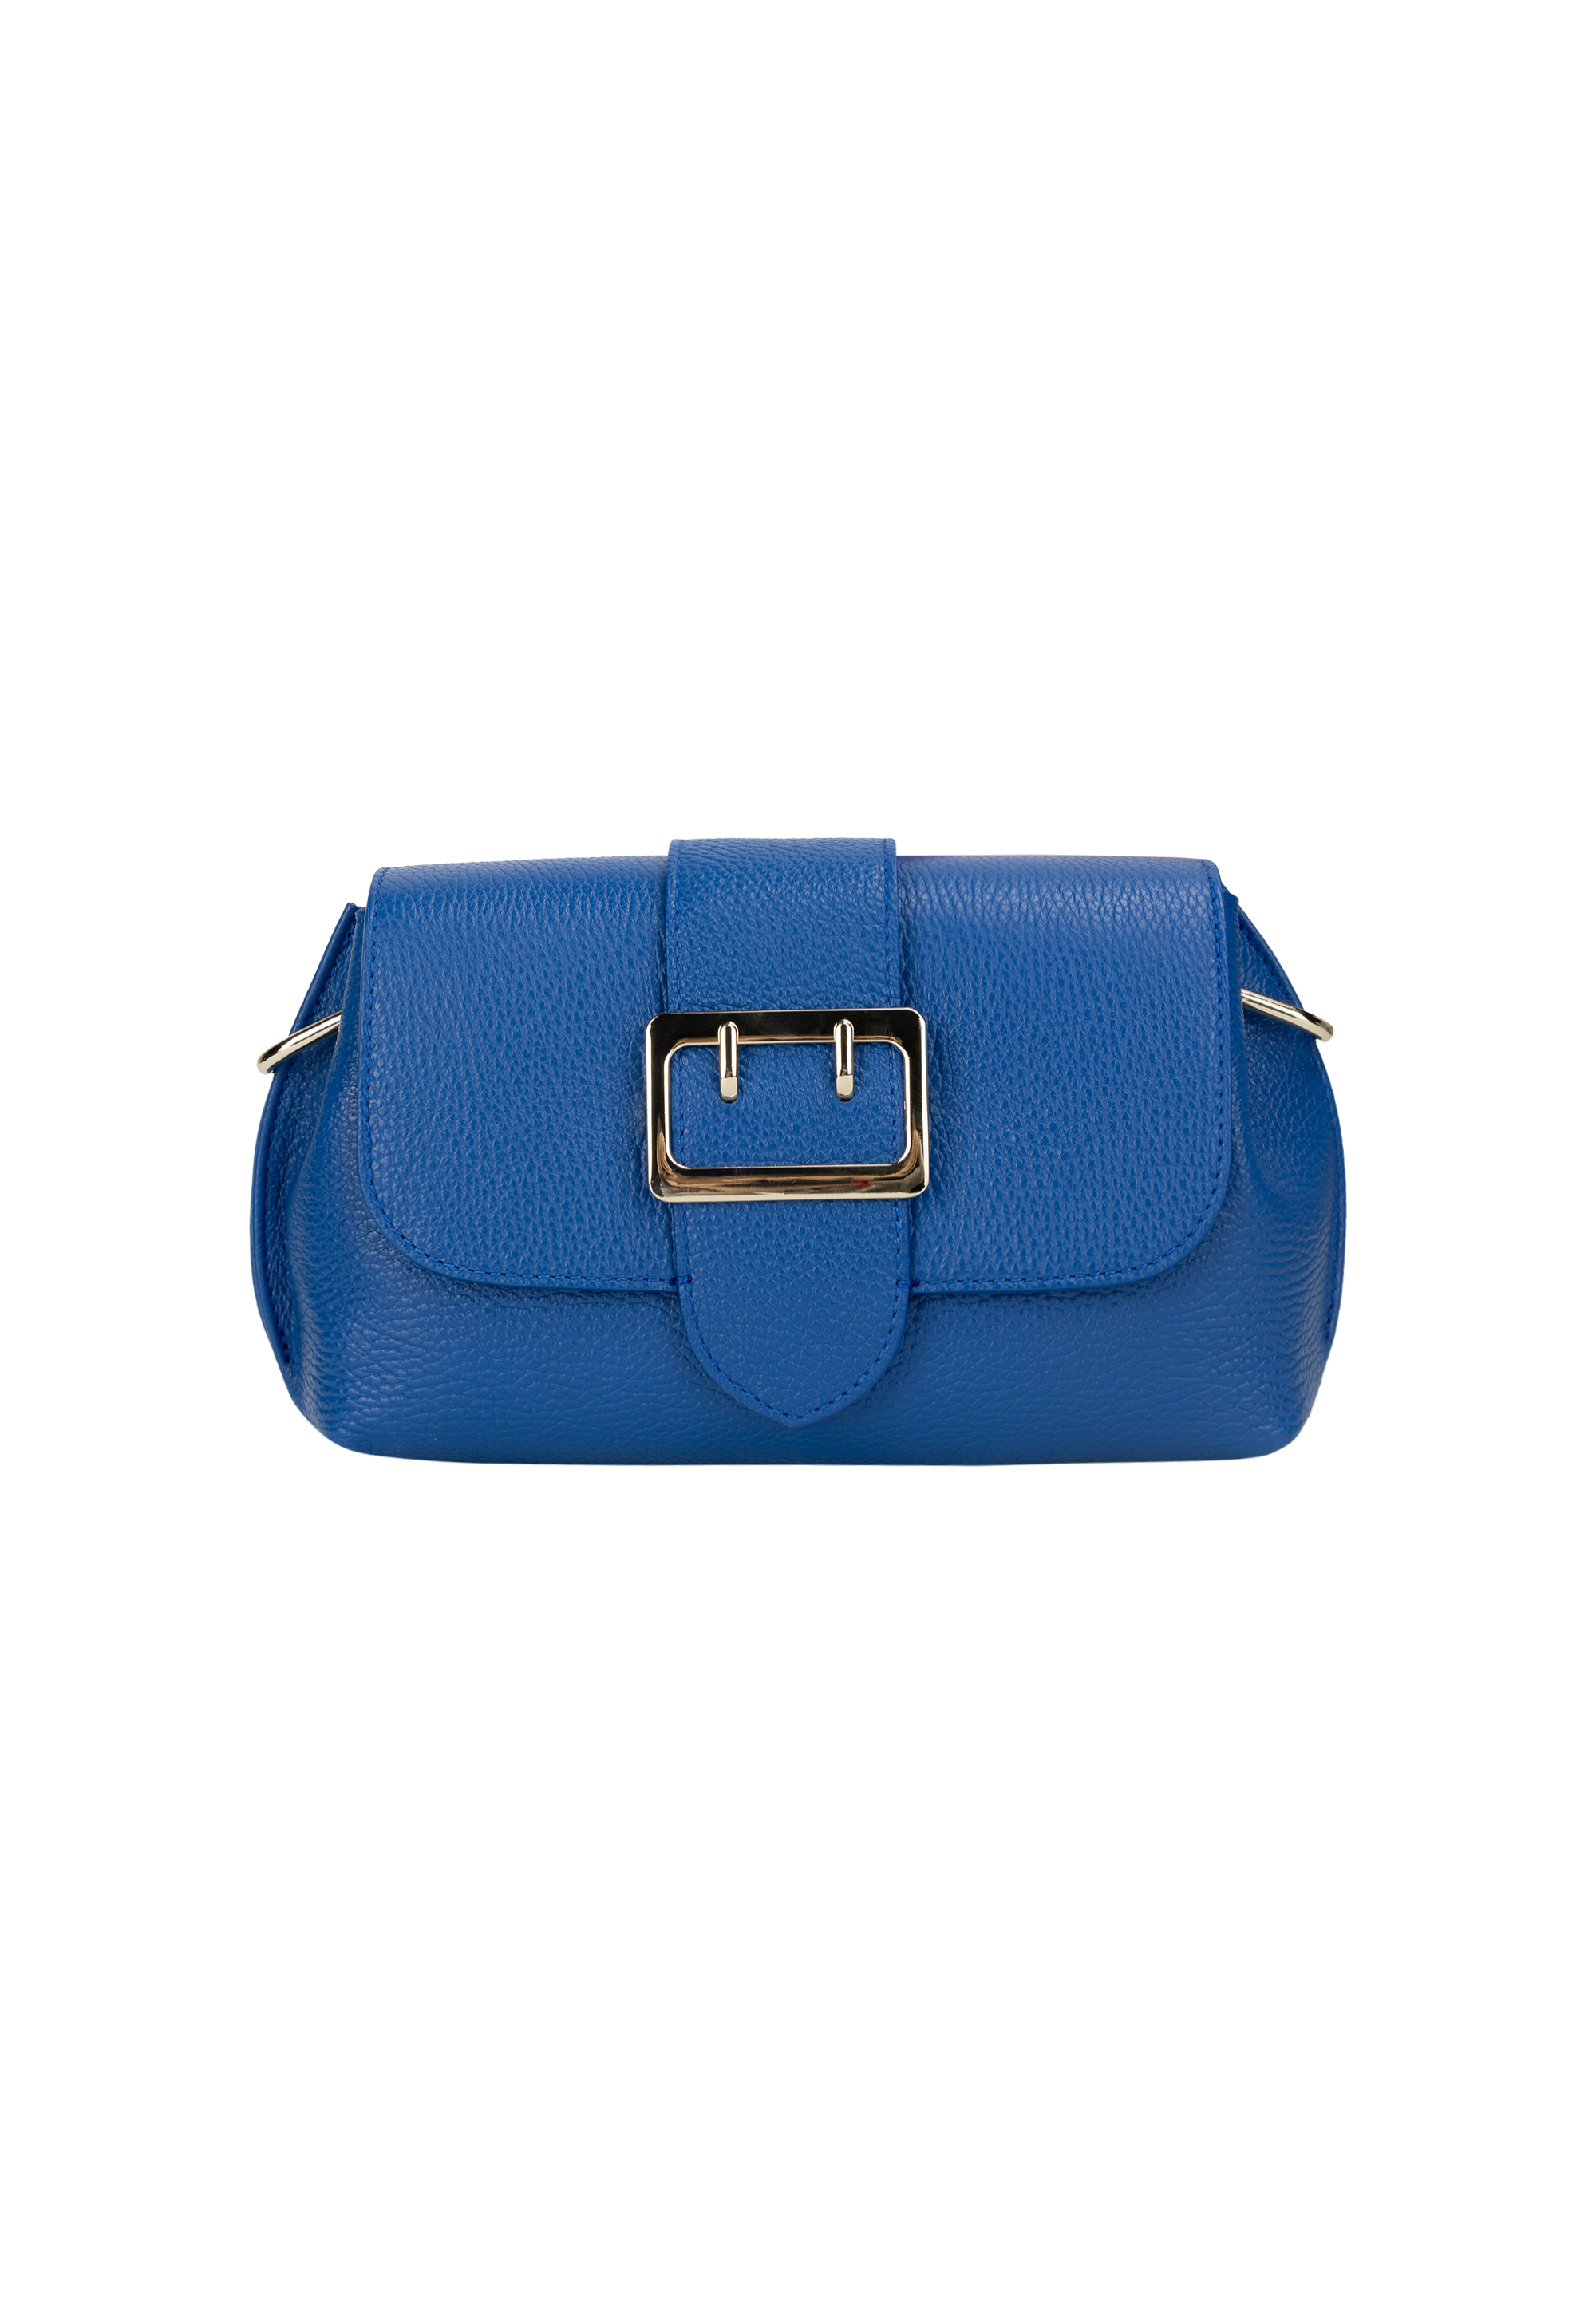 Сумка через плечо NAEMI Handtasche, цвет Azurblau сумка через плечо naemi handtasche цвет dubarry